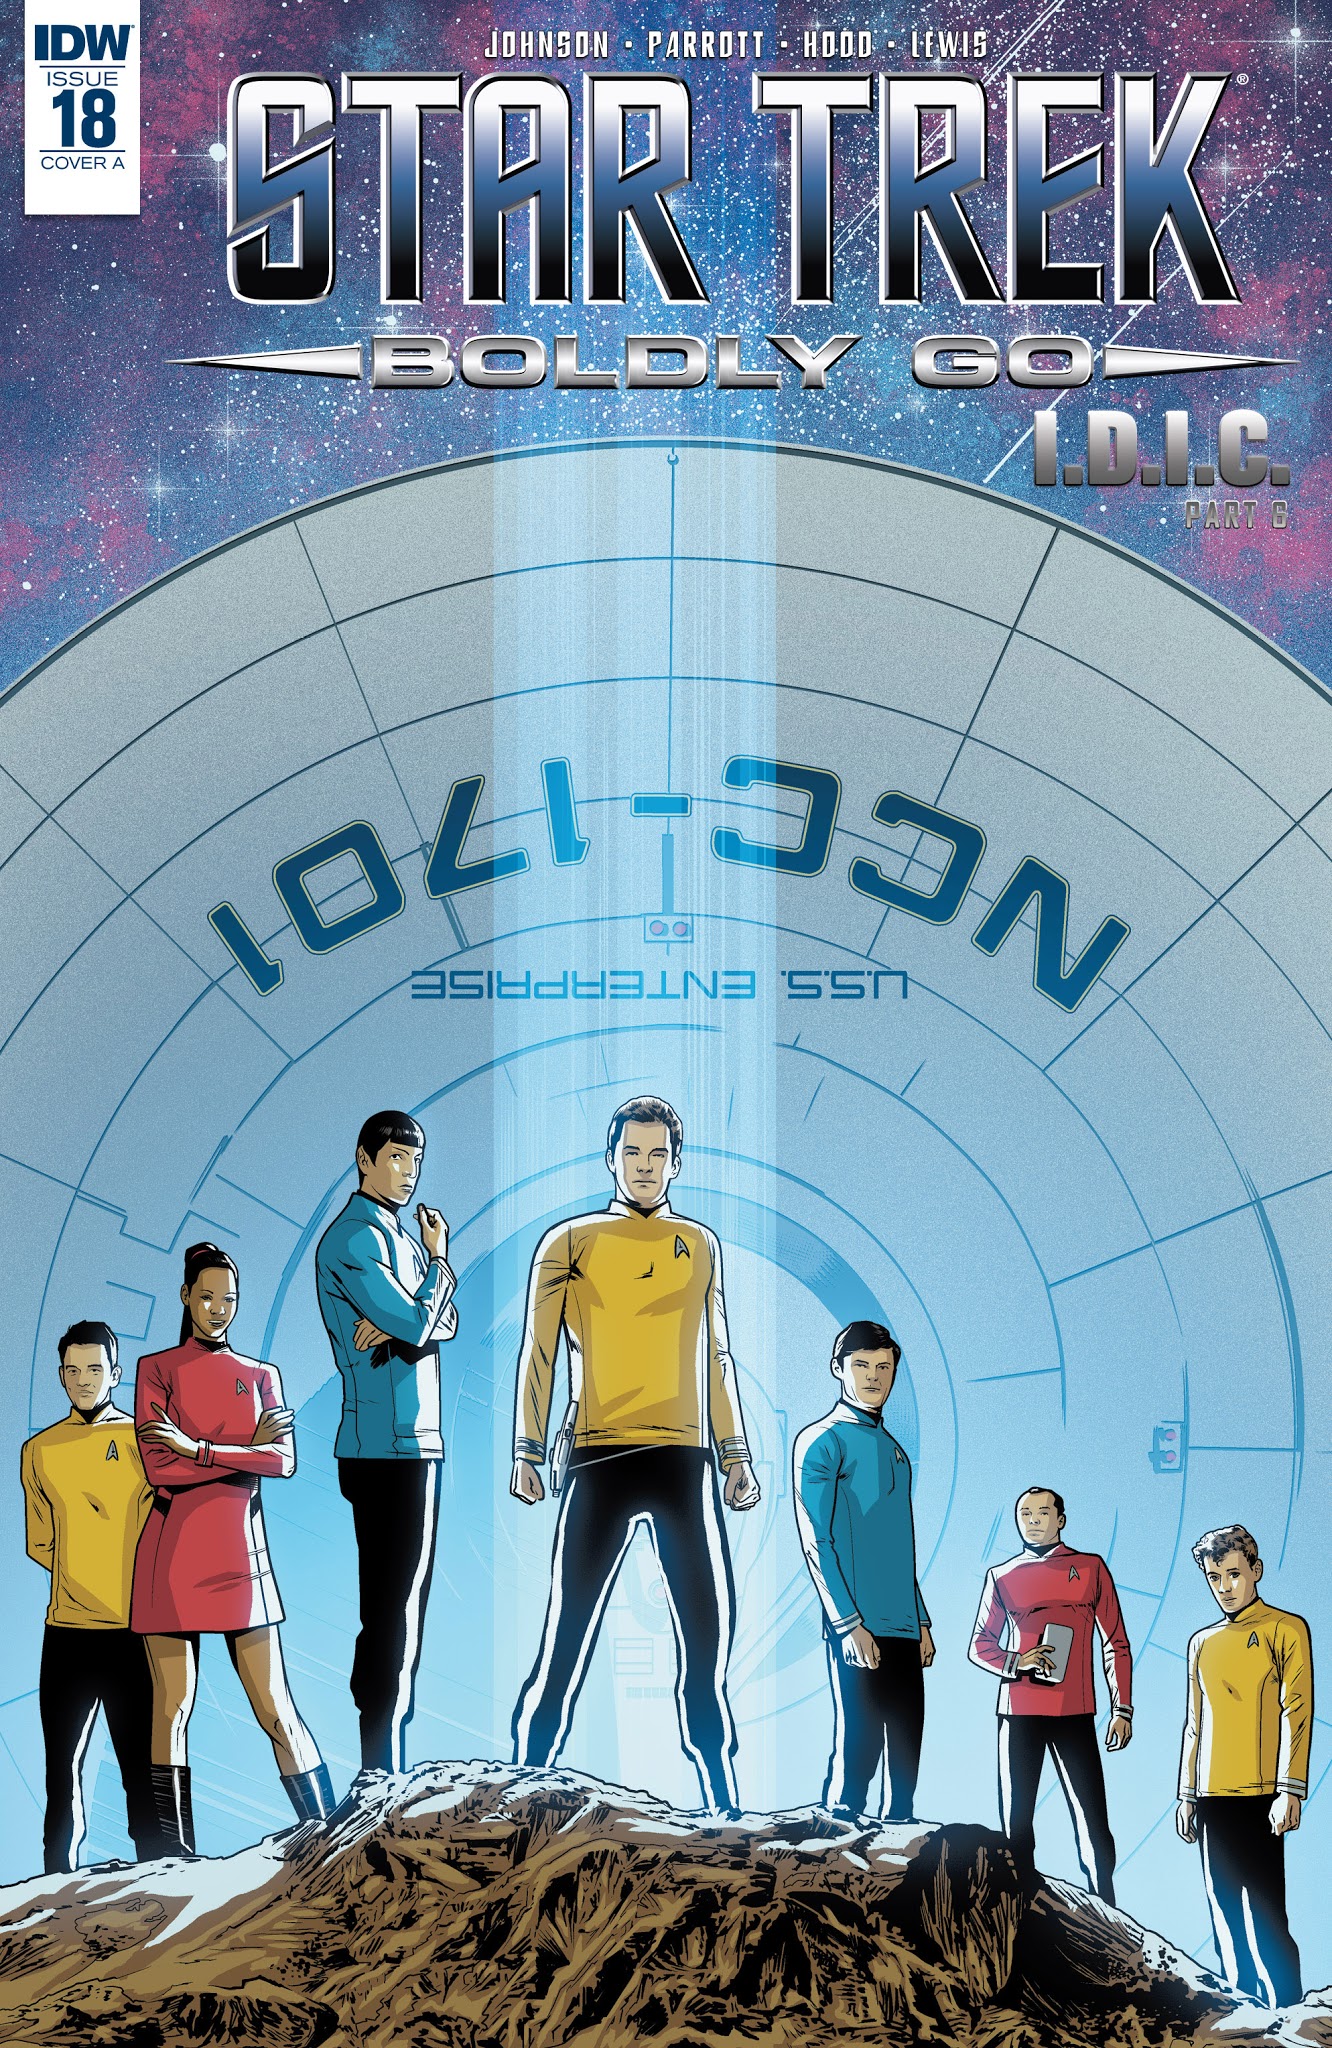 Read online Star Trek: Boldly Go comic -  Issue #18 - 1